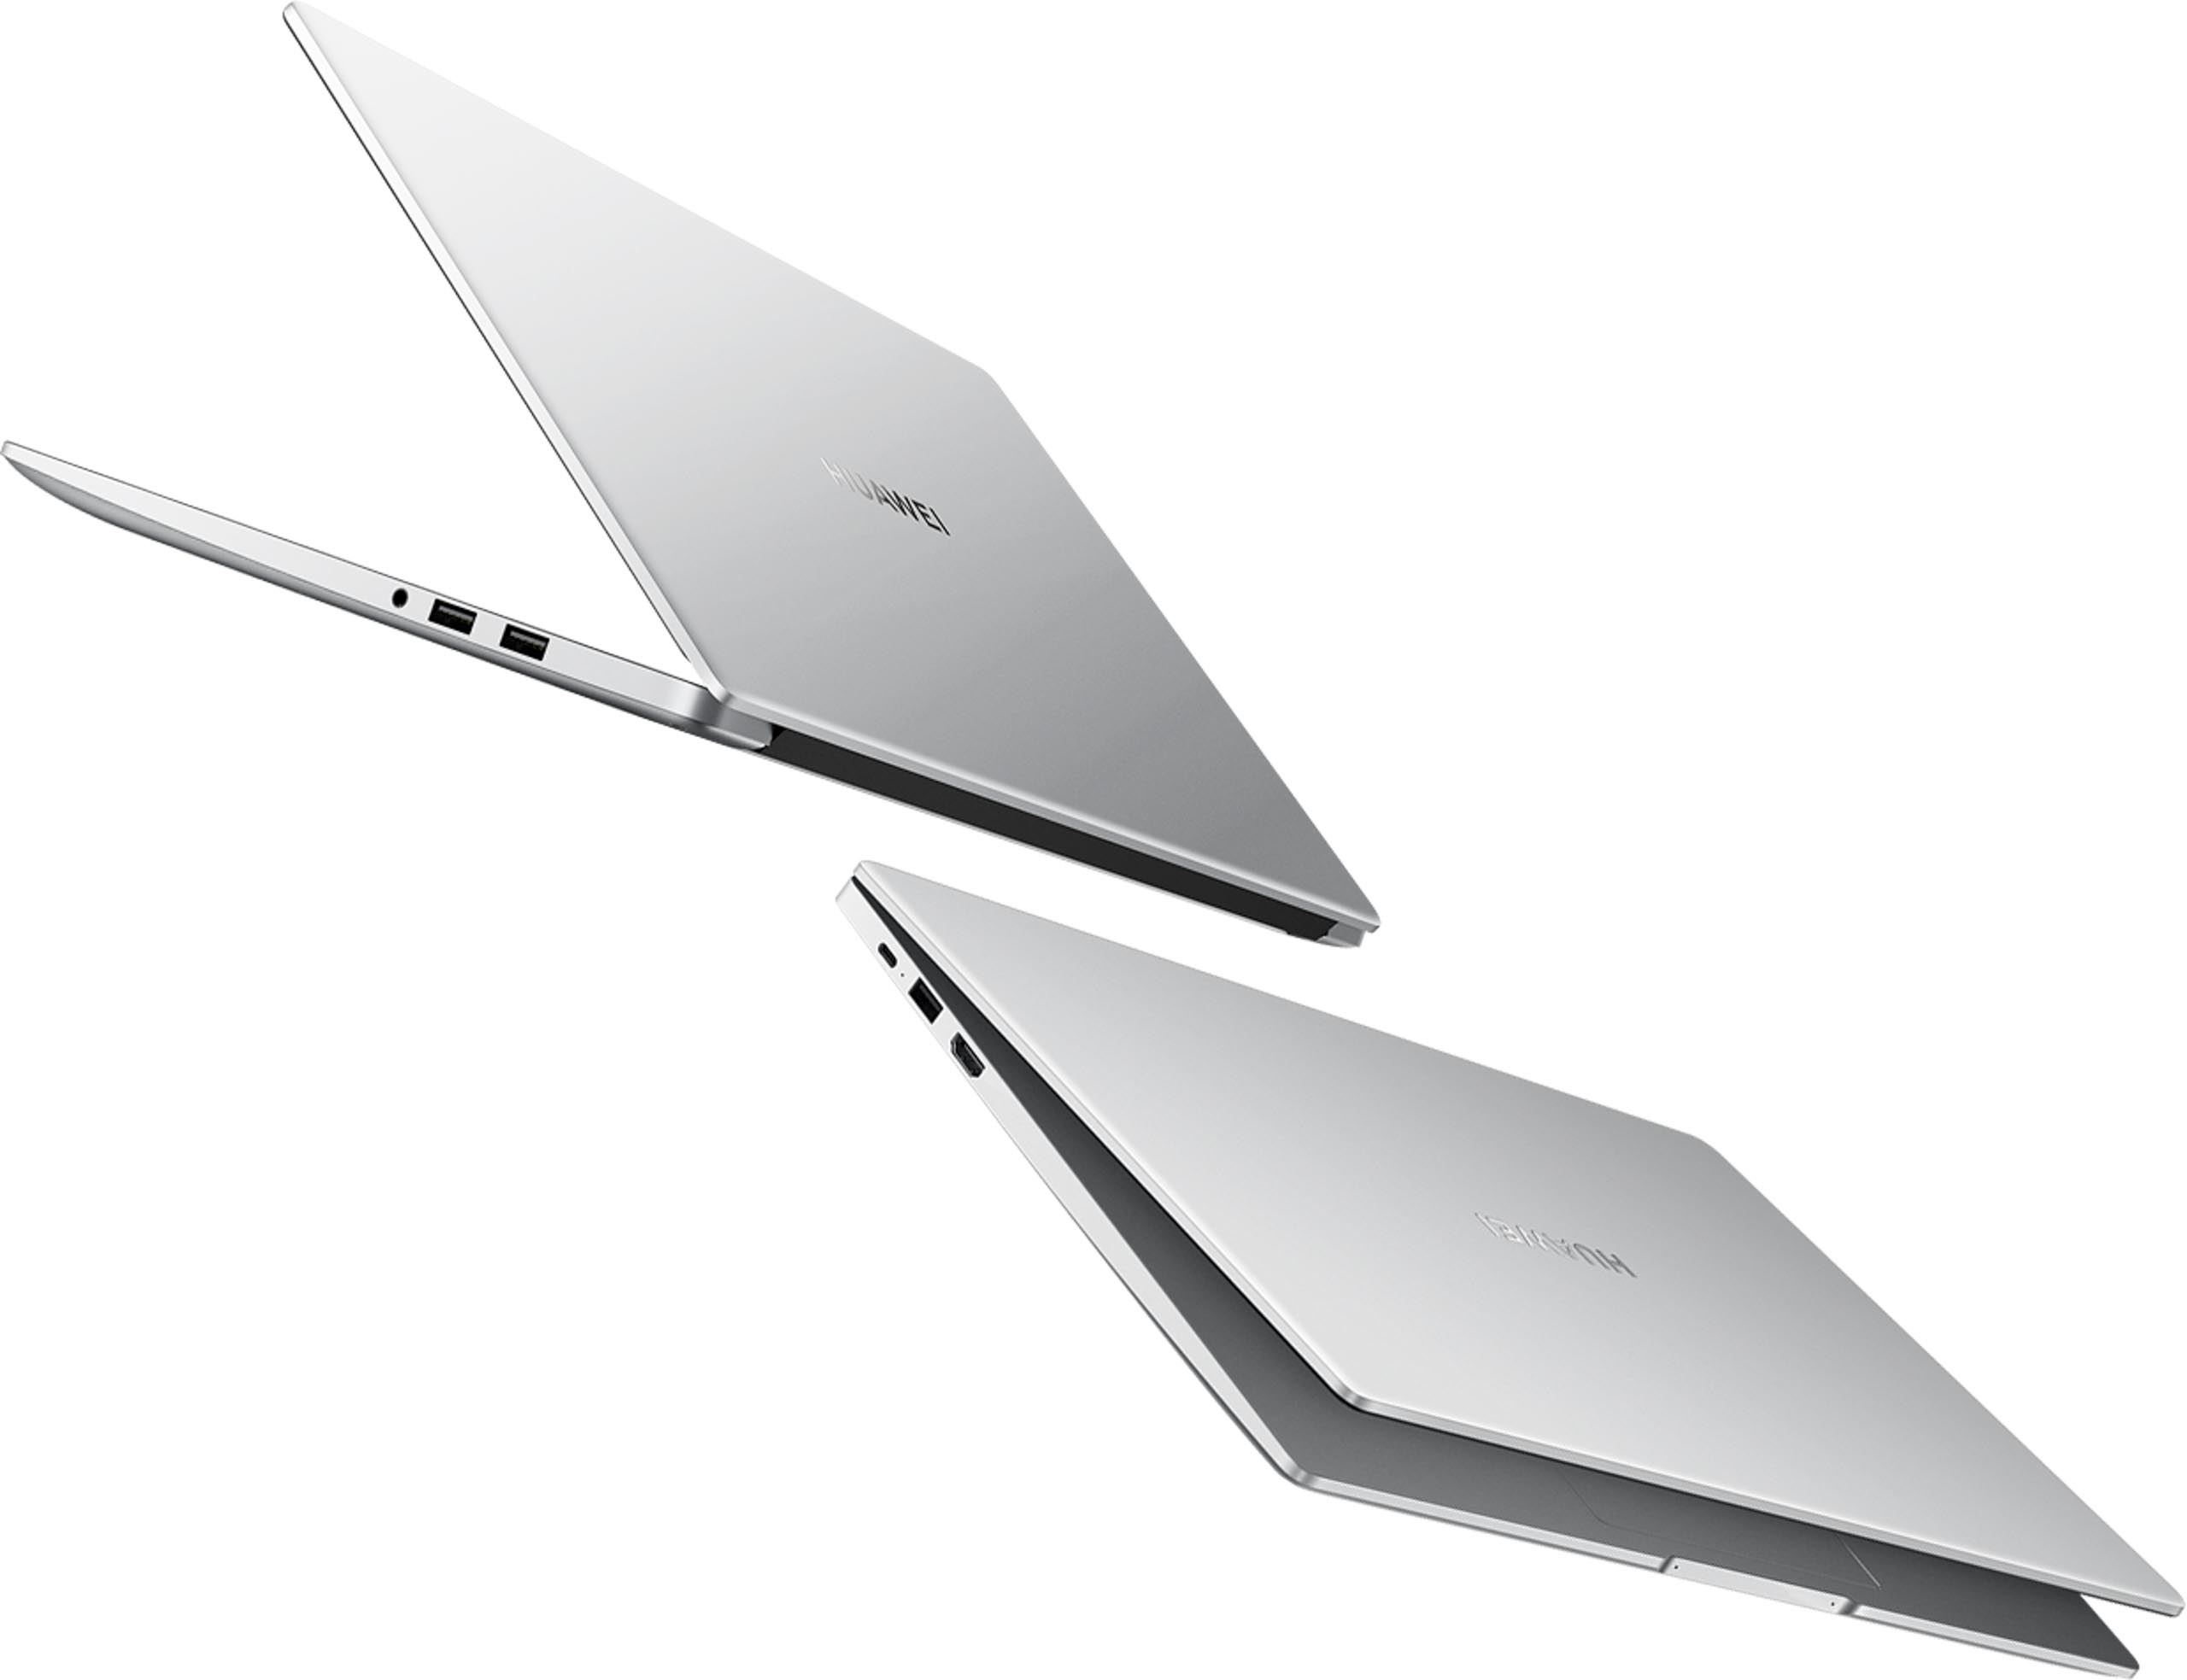 Huawei ra mắt laptop MateBook D 15 với màn hình tràn viền, khoá vân tay, giá 15,990,000 VND